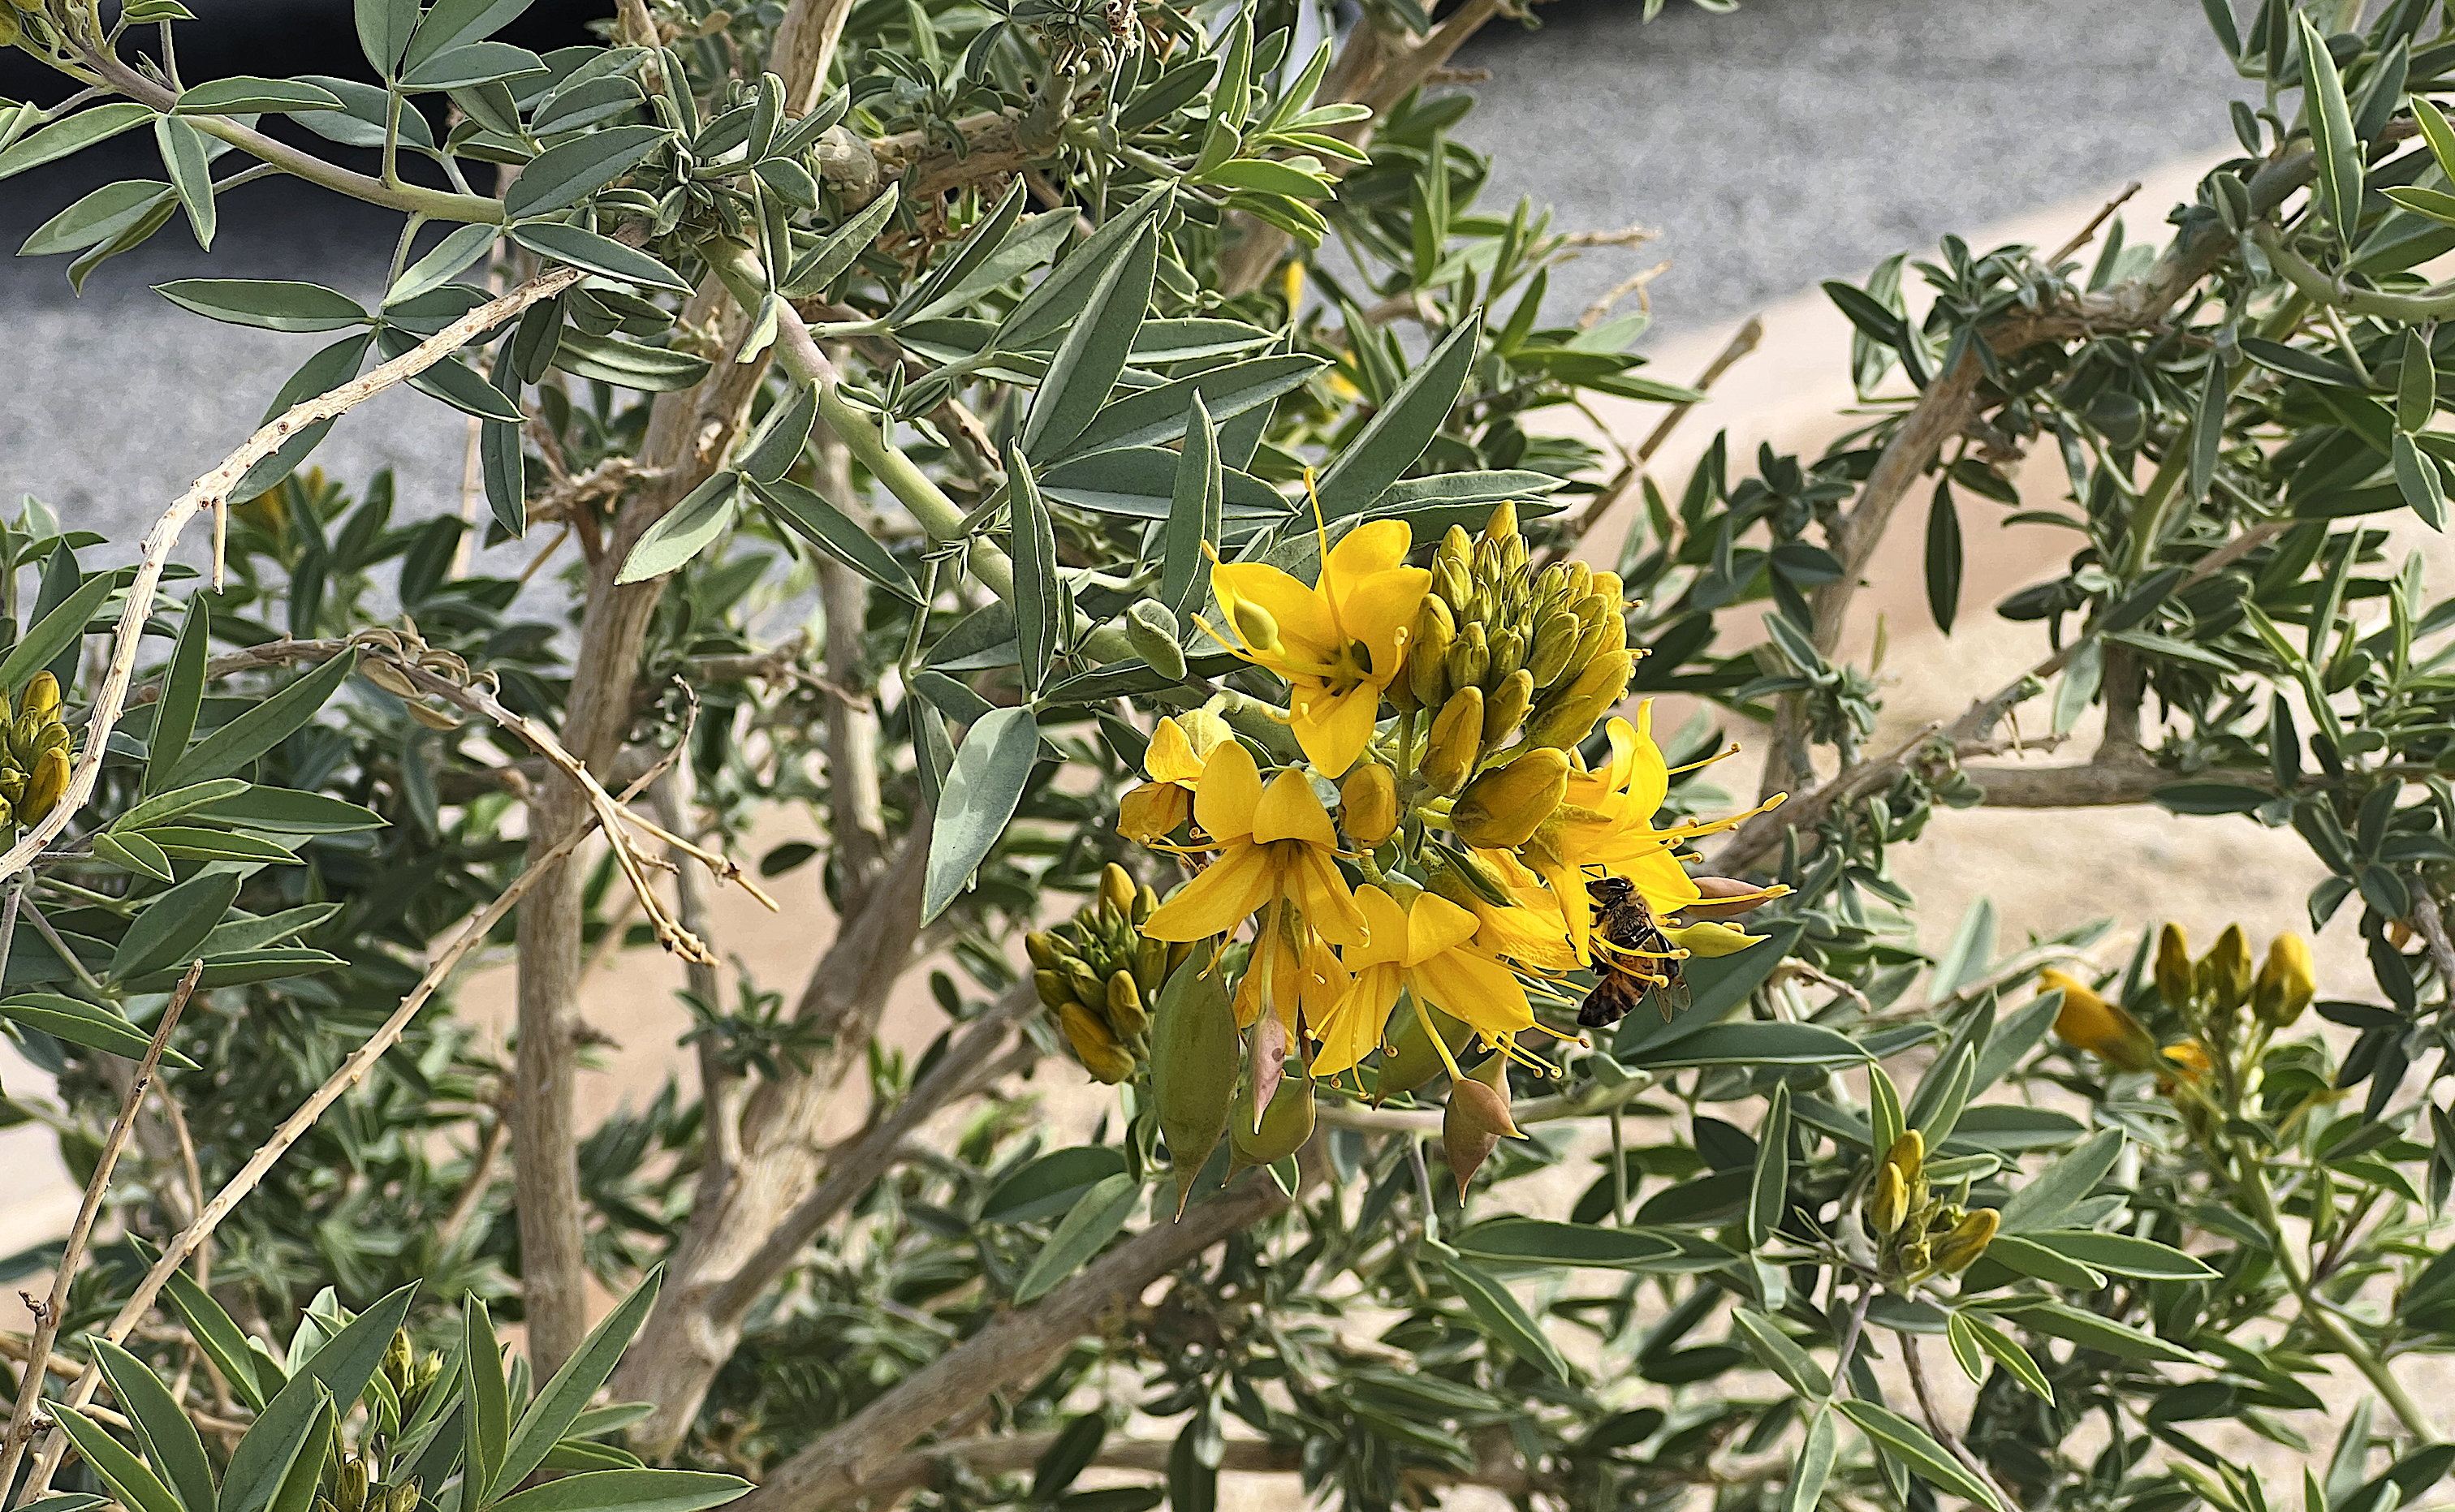 Ein Strauch mit grünen, dicken Blättern hat schöne gelbe Blüten ausgebildet. Wer genau hinschaut, bemerkt eine Biene an den Blüten.